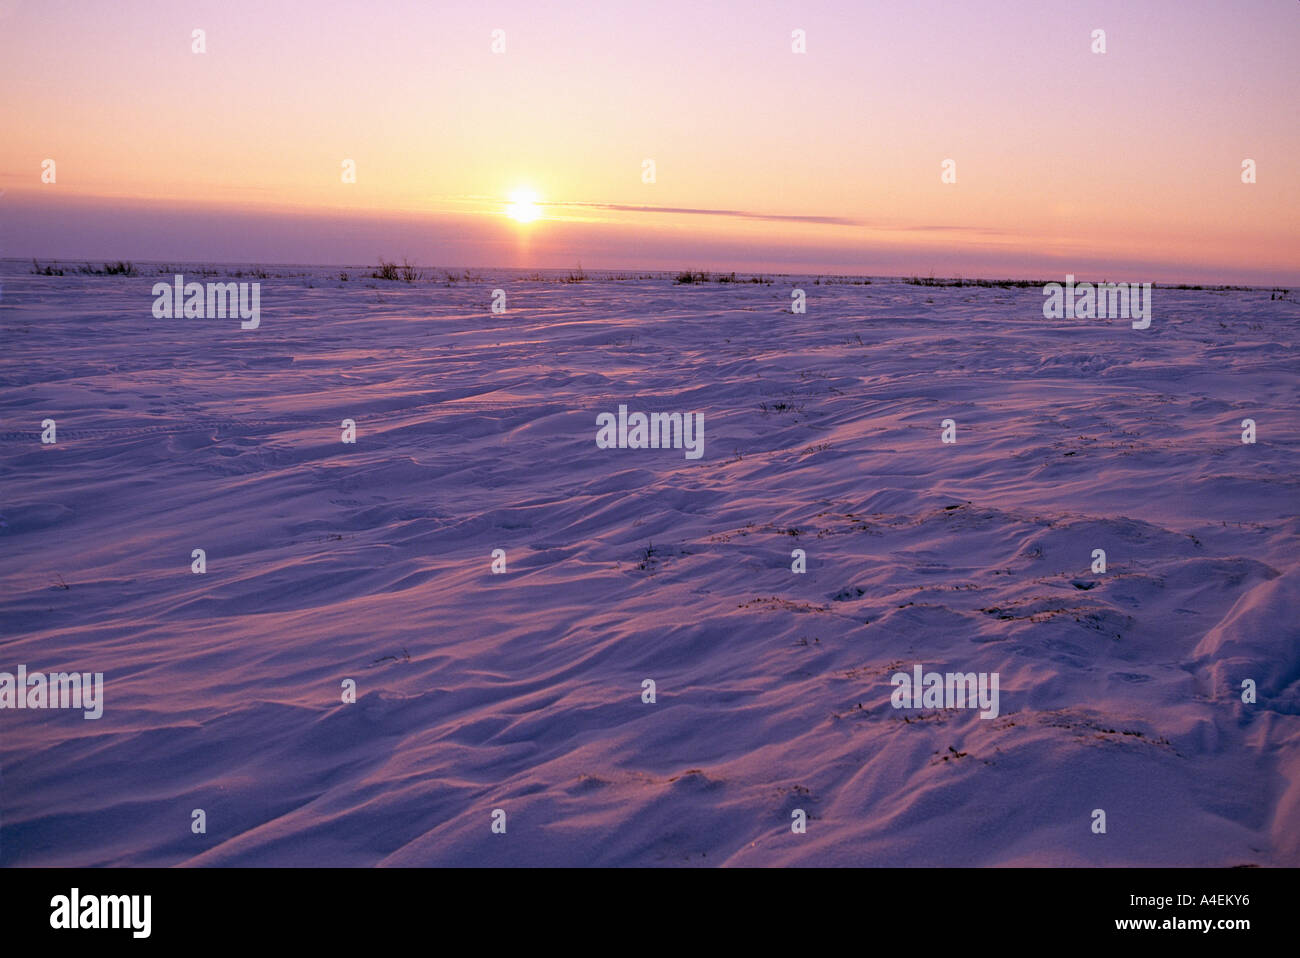 Kanada-Wapusk-Nationalpark in der Nähe von Hudson Bay s Sastrugi Formen aus Wind im Schnee bei Sonnenuntergang Anfang März Stockfoto